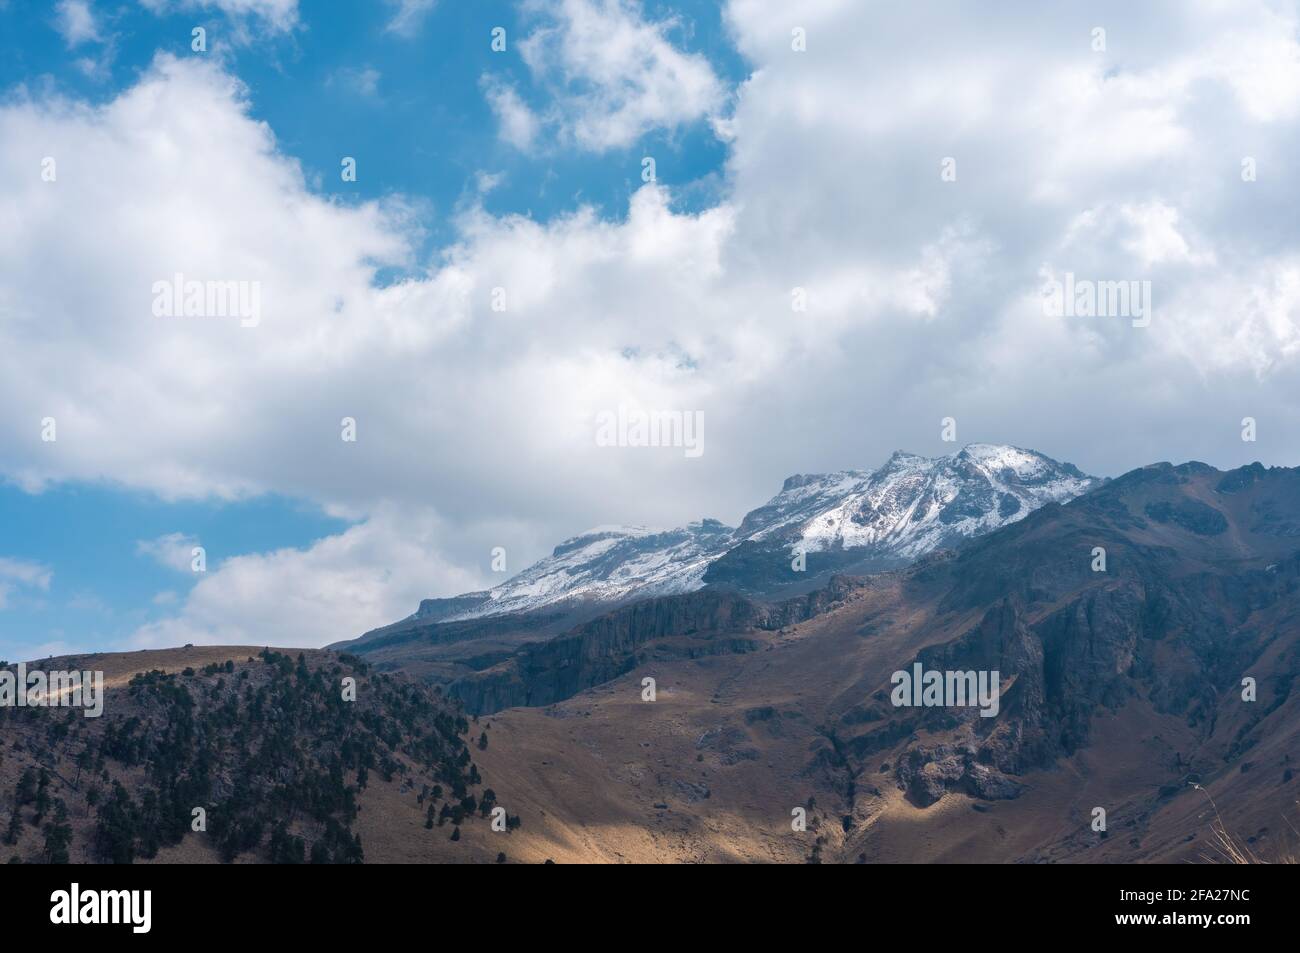 Atemberaubende Aussicht auf den schneebedeckten Gipfel des Vulkans Iztaccihuatl Mexiko unter einem bewölkten Himmel Stockfoto